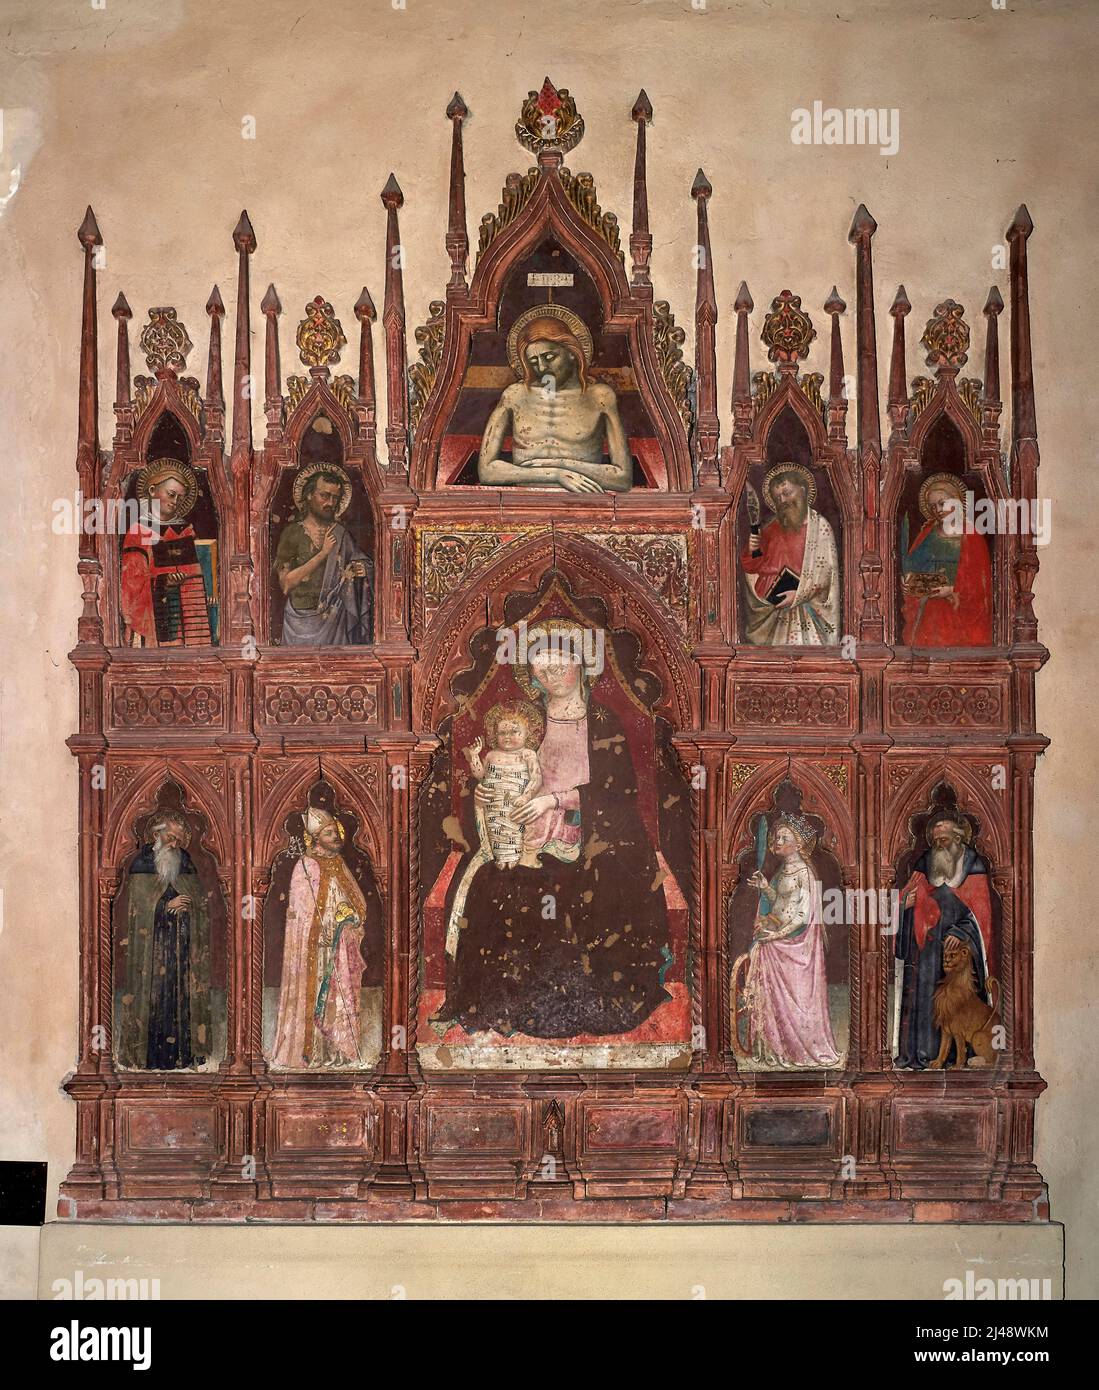 Madonna col Bambino in trono e santi - Lippo Dalmasio - XIV secolo - Bologna, chiesa di S. Maria dei Servi Foto Stock